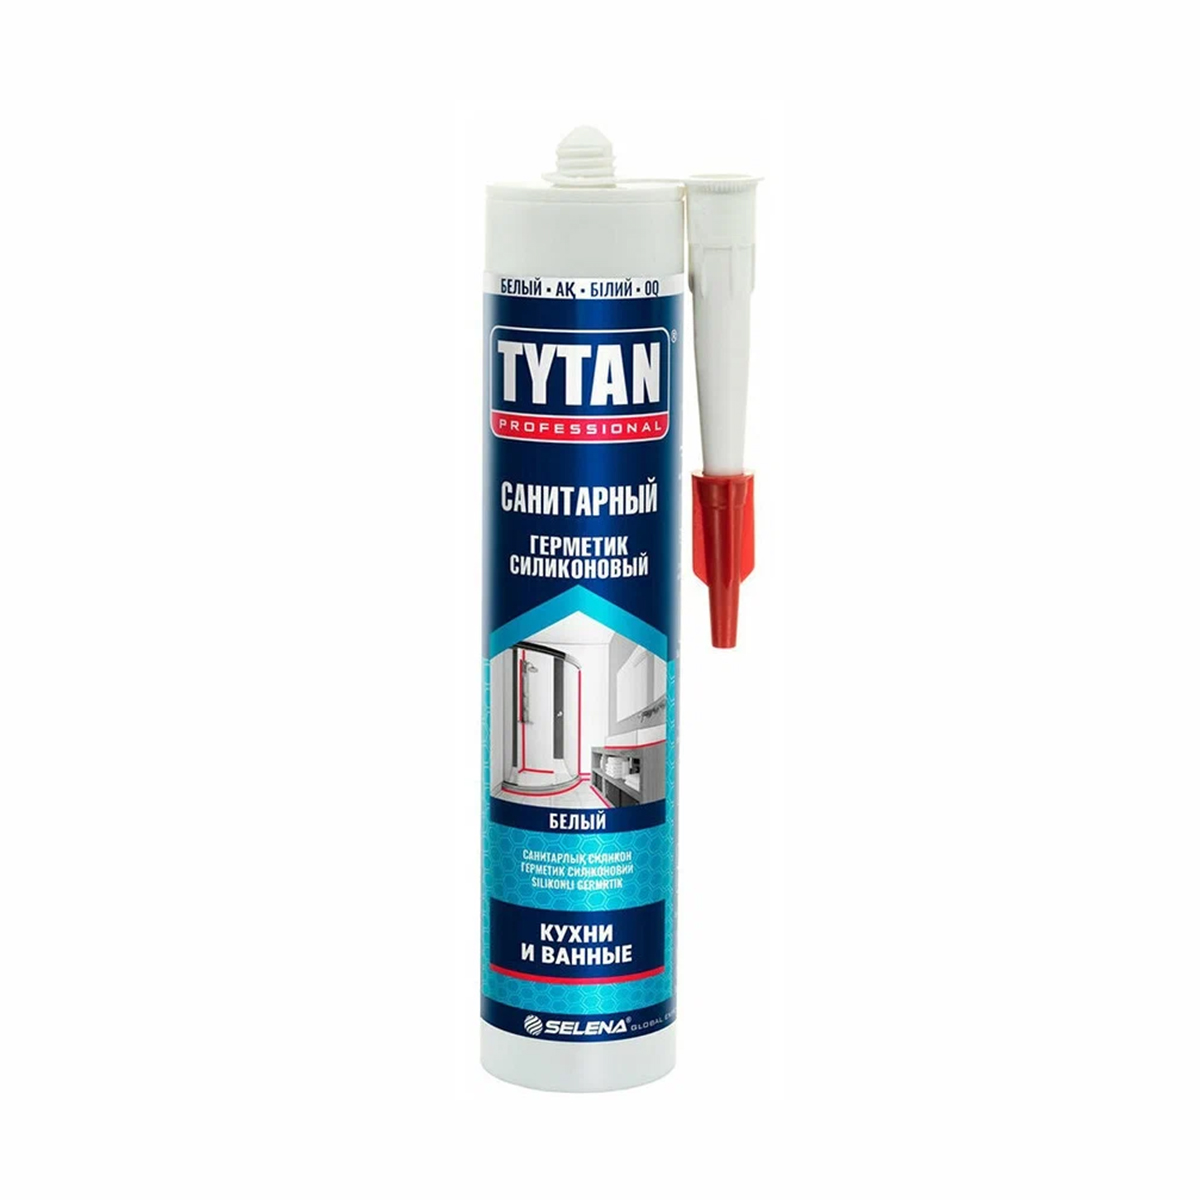 Силиконовый санитарный герметик Tytan Professional 17438, 280 мл, белый герметик силиконовый tytan универсальный белый 280 мл уксусный